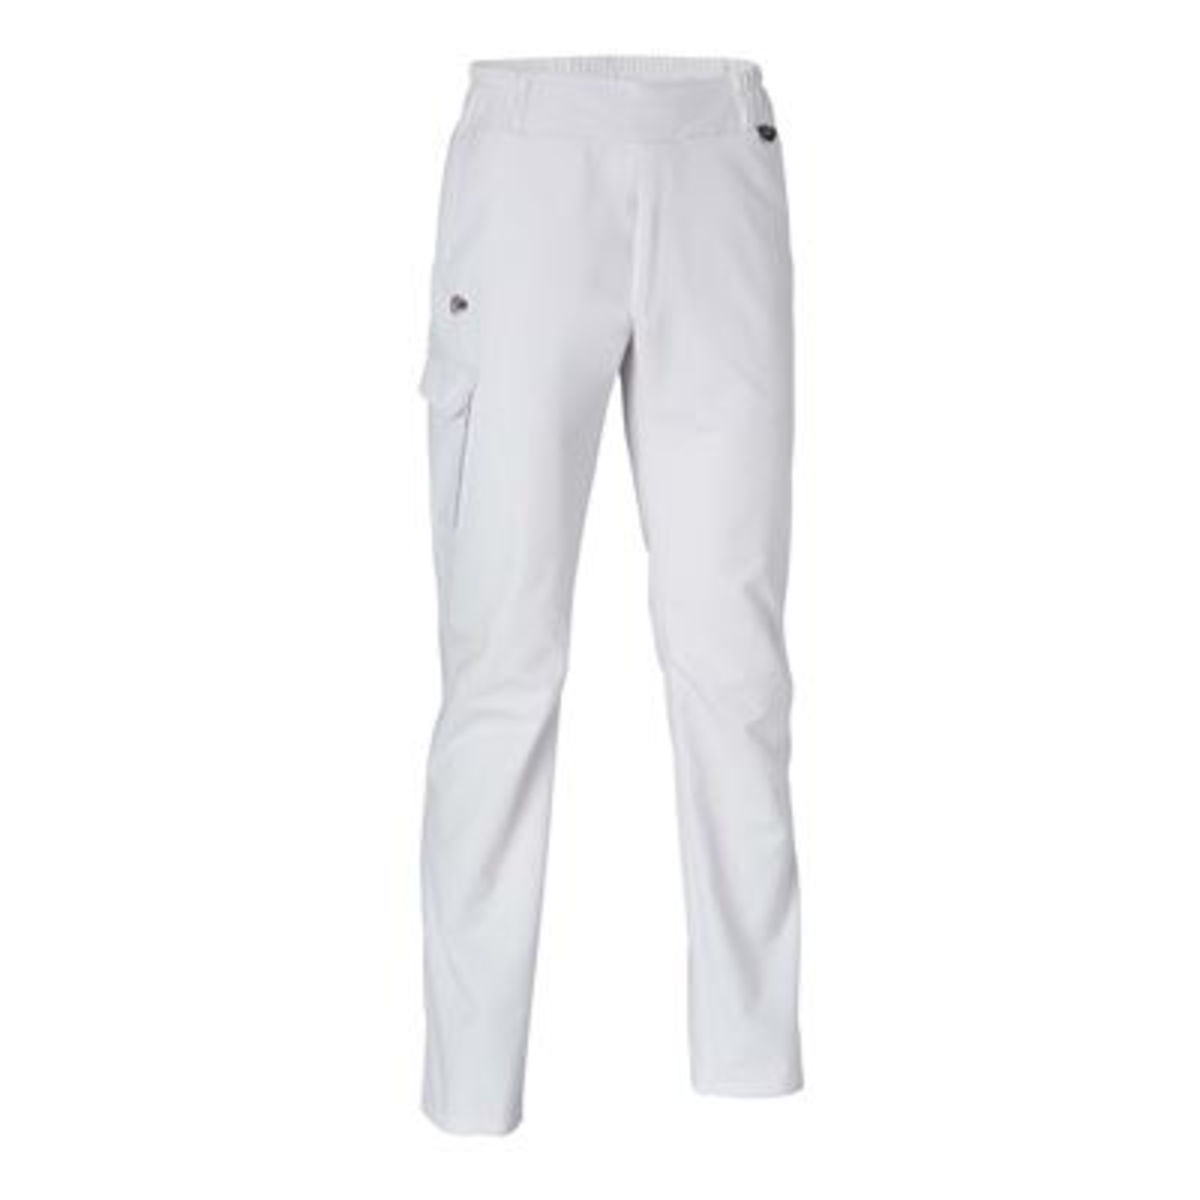 Pantalon de service homme Flex'R blanc T.2 - Molinel - 1193601001